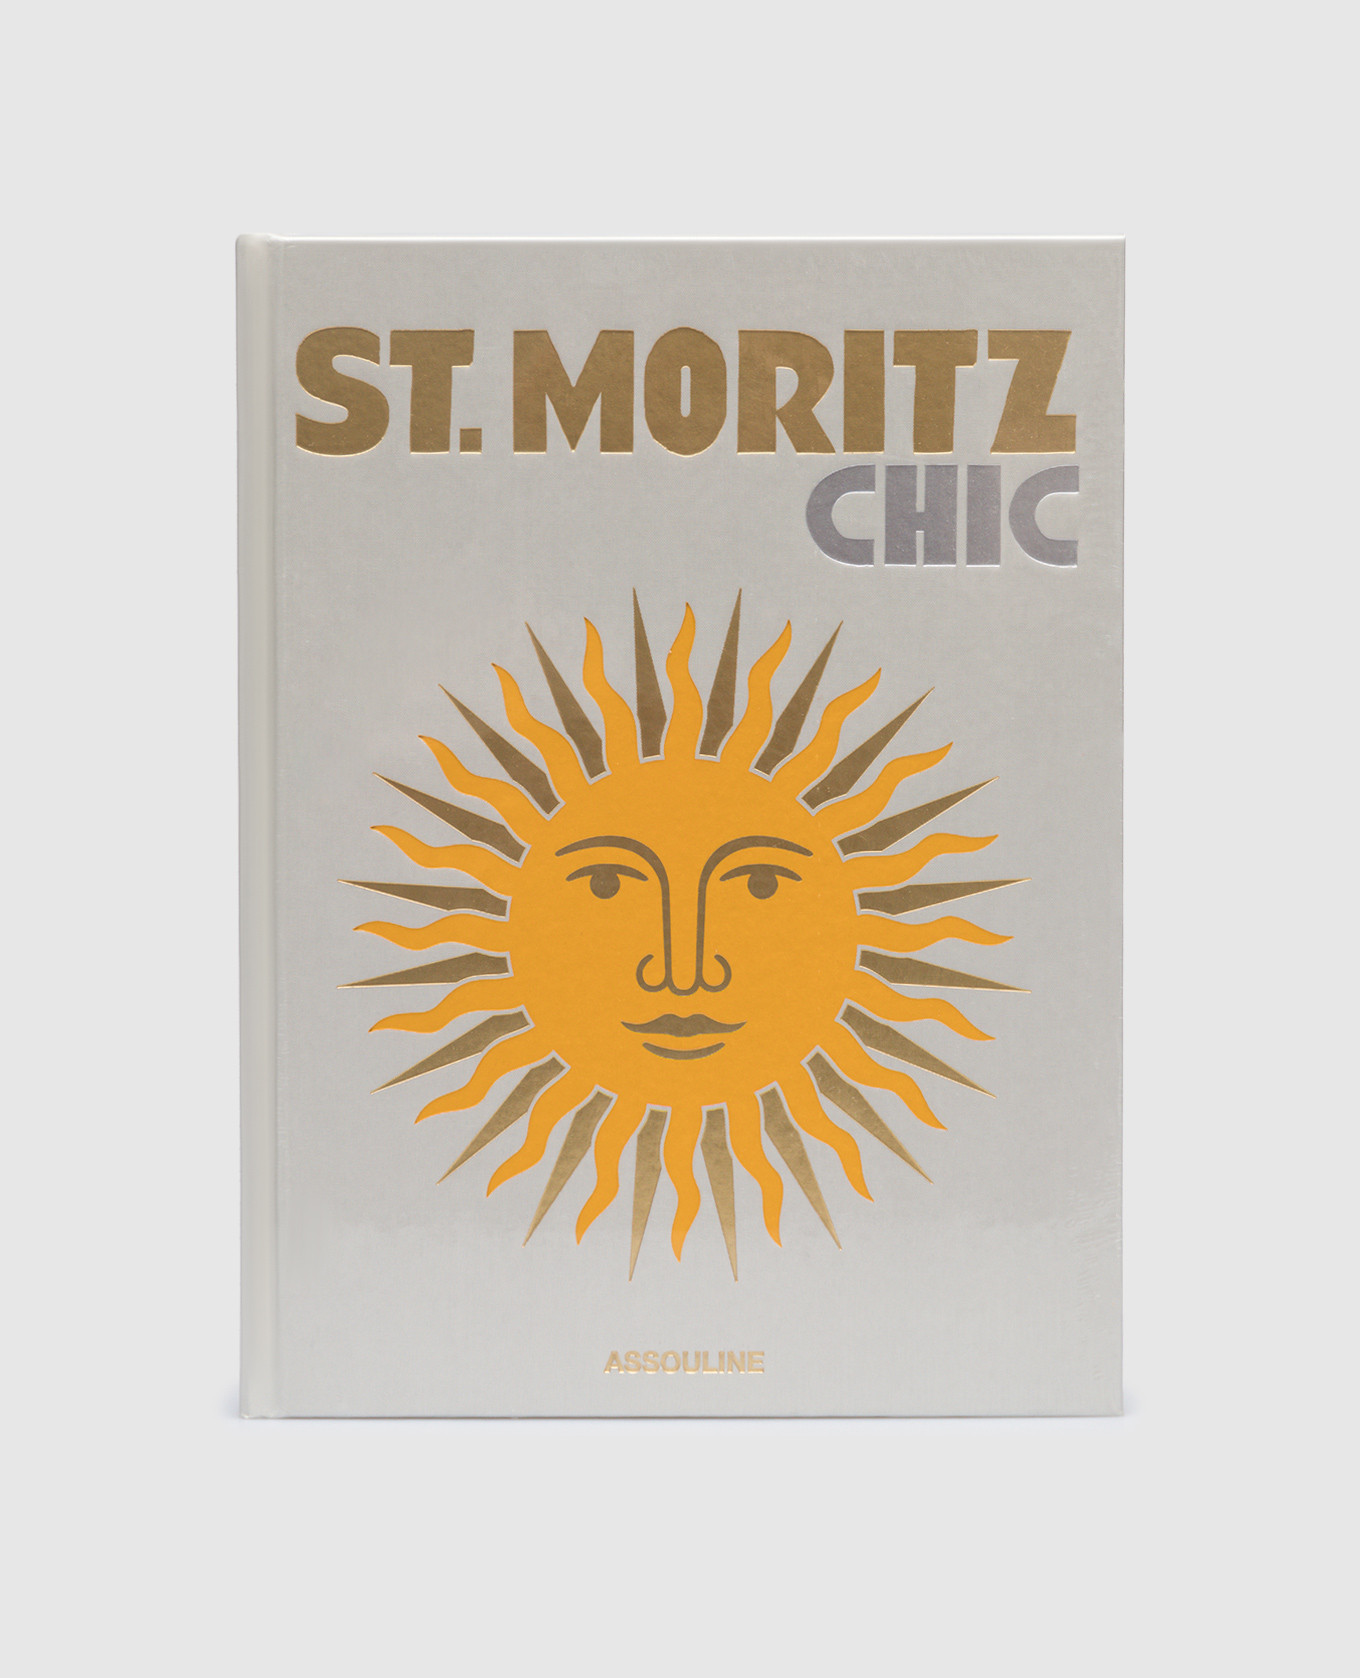 Il libro di St. Moritz Chic